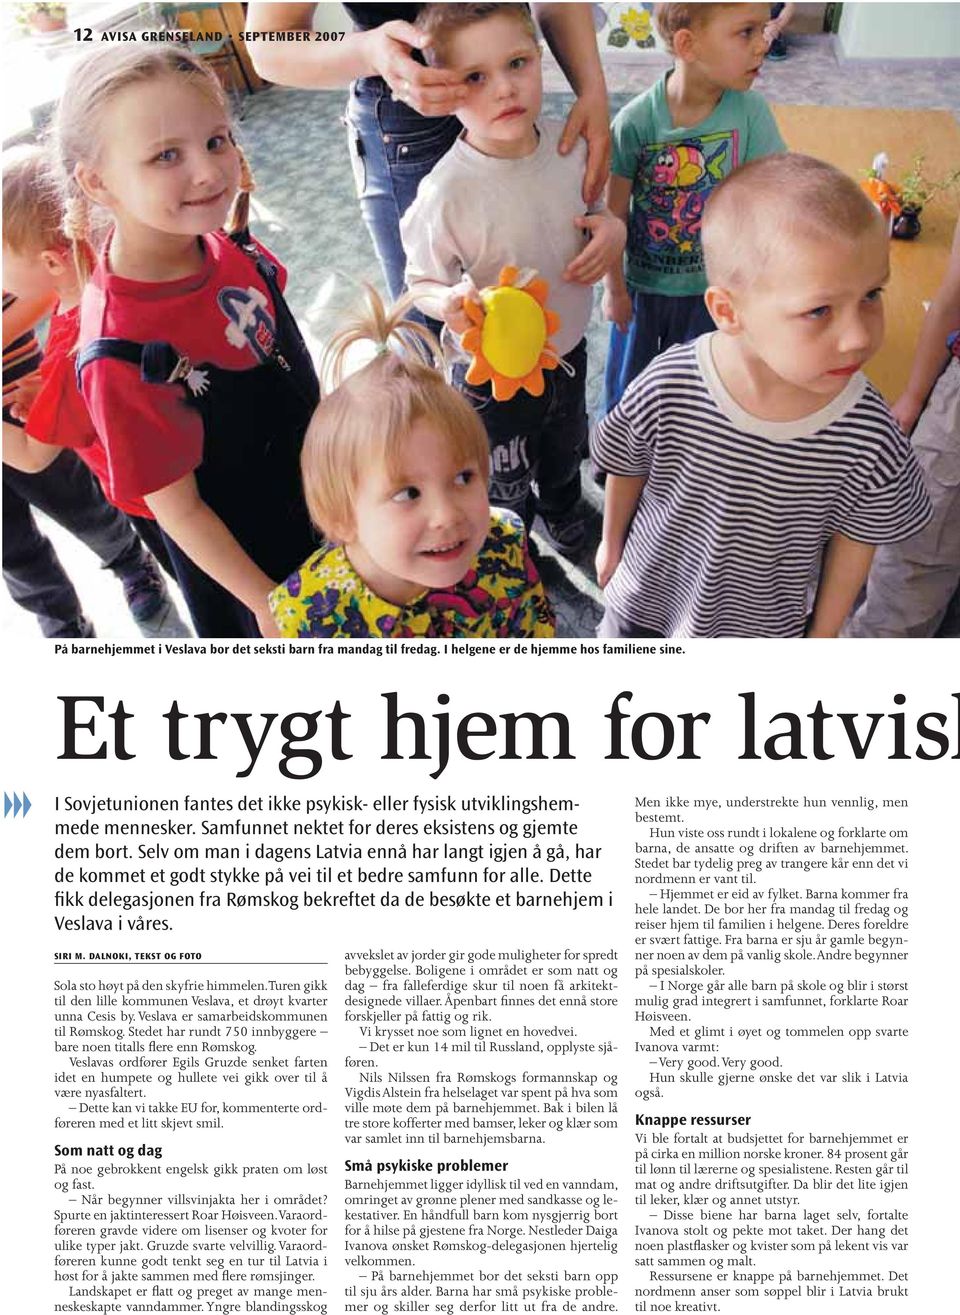 Selv om man i dagens Latvia ennå har langt igjen å gå, har de kommet et godt stykke på vei til et bedre samfunn for alle.